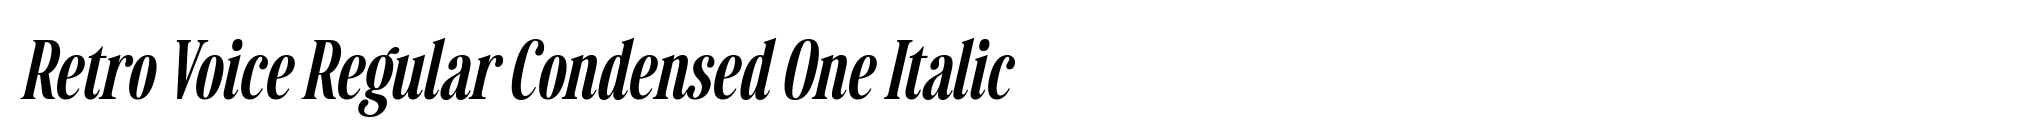 Retro Voice Regular Condensed One Italic image